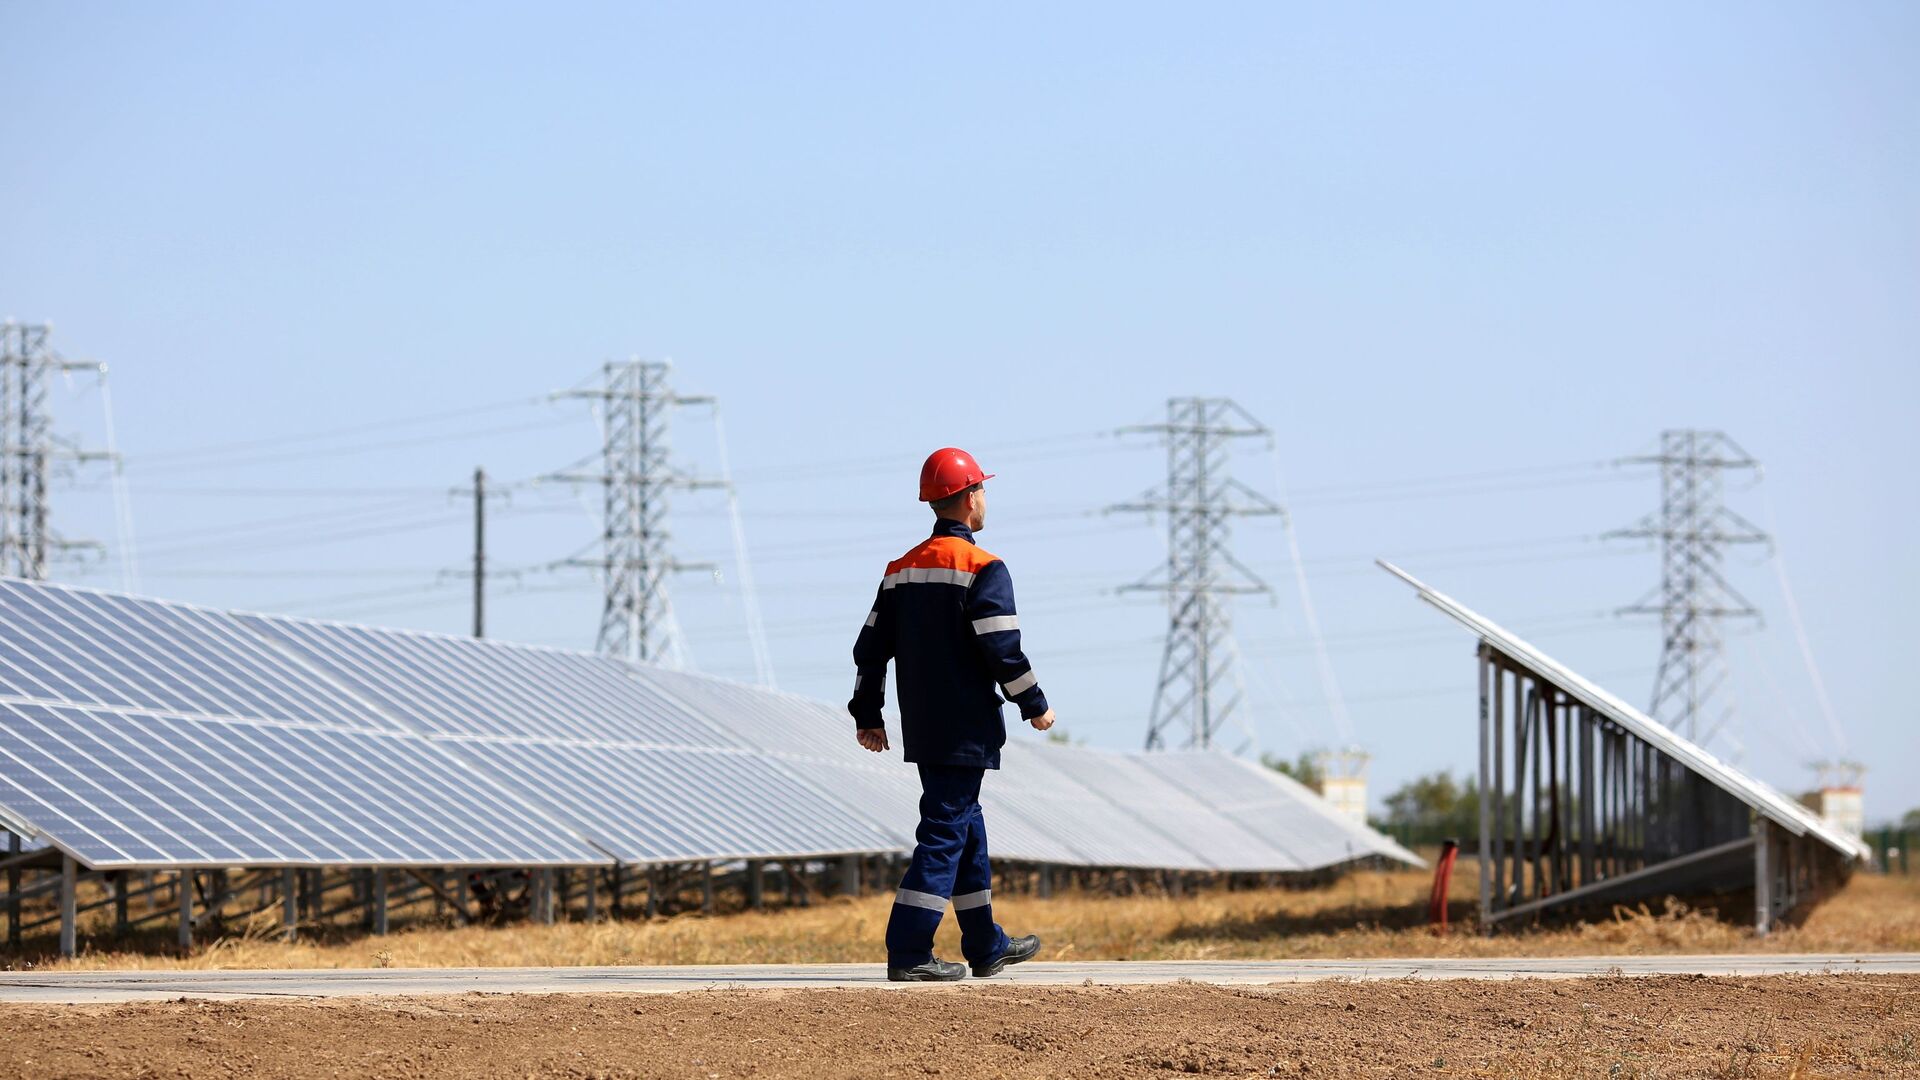 Сотрудник осматривает состояние фотоэлектрических элементов на солнечных панелях солнечной электростанции - Sputnik Узбекистан, 1920, 10.05.2021